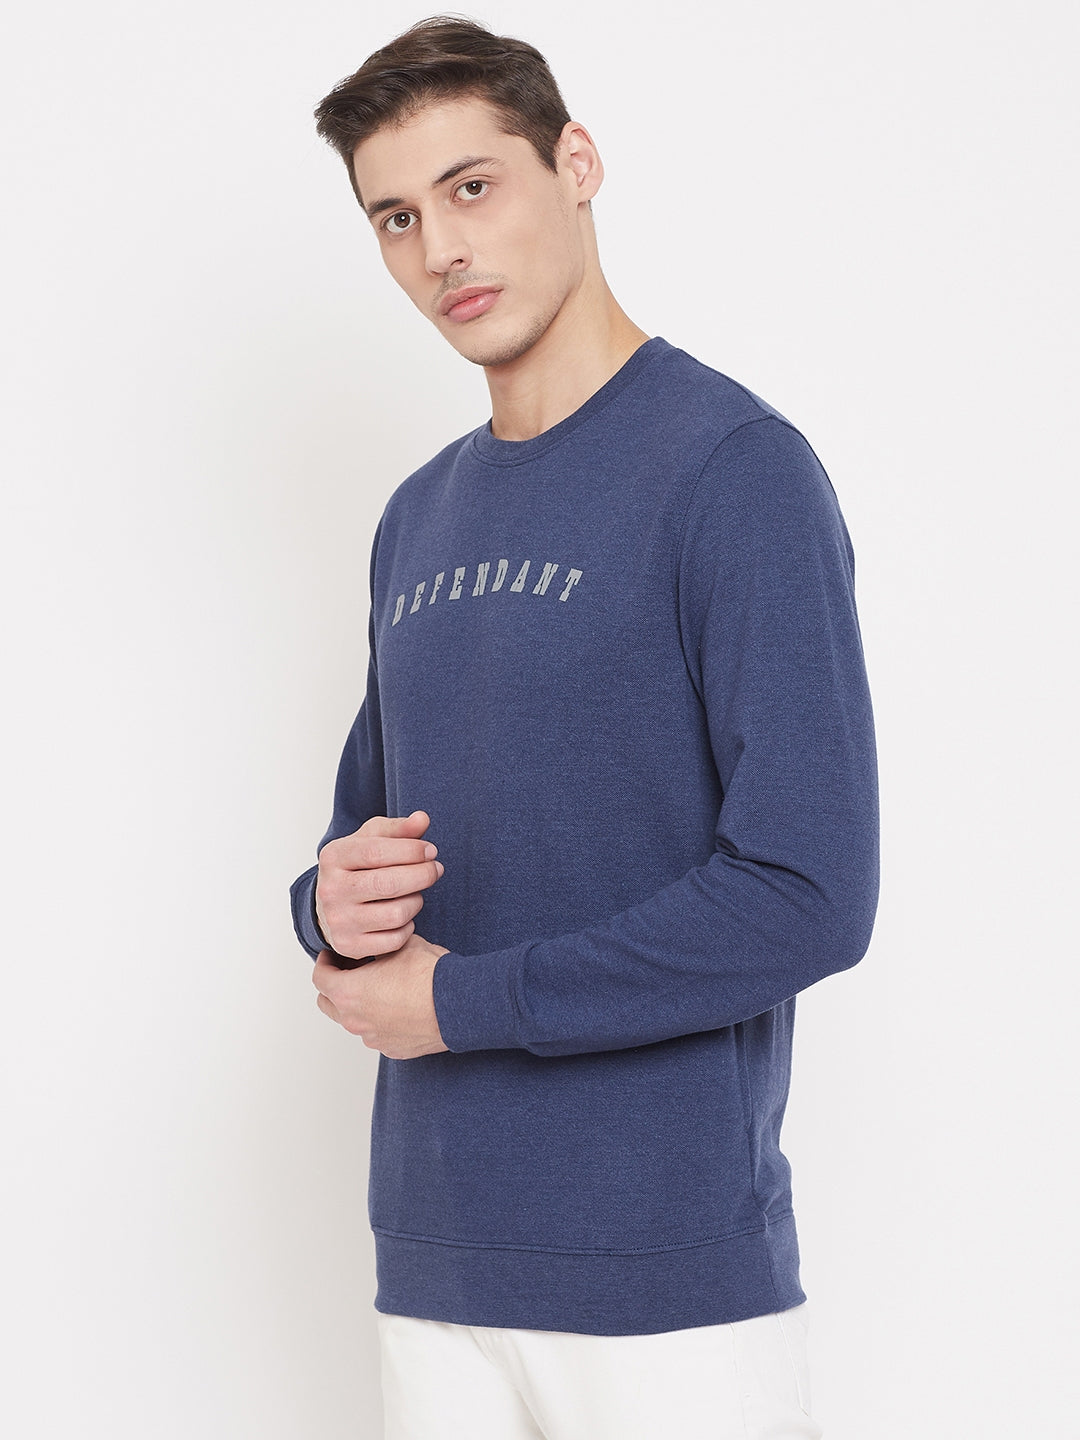 Blue Printed Round Neck Sweatshirt - Men Sweatshirts